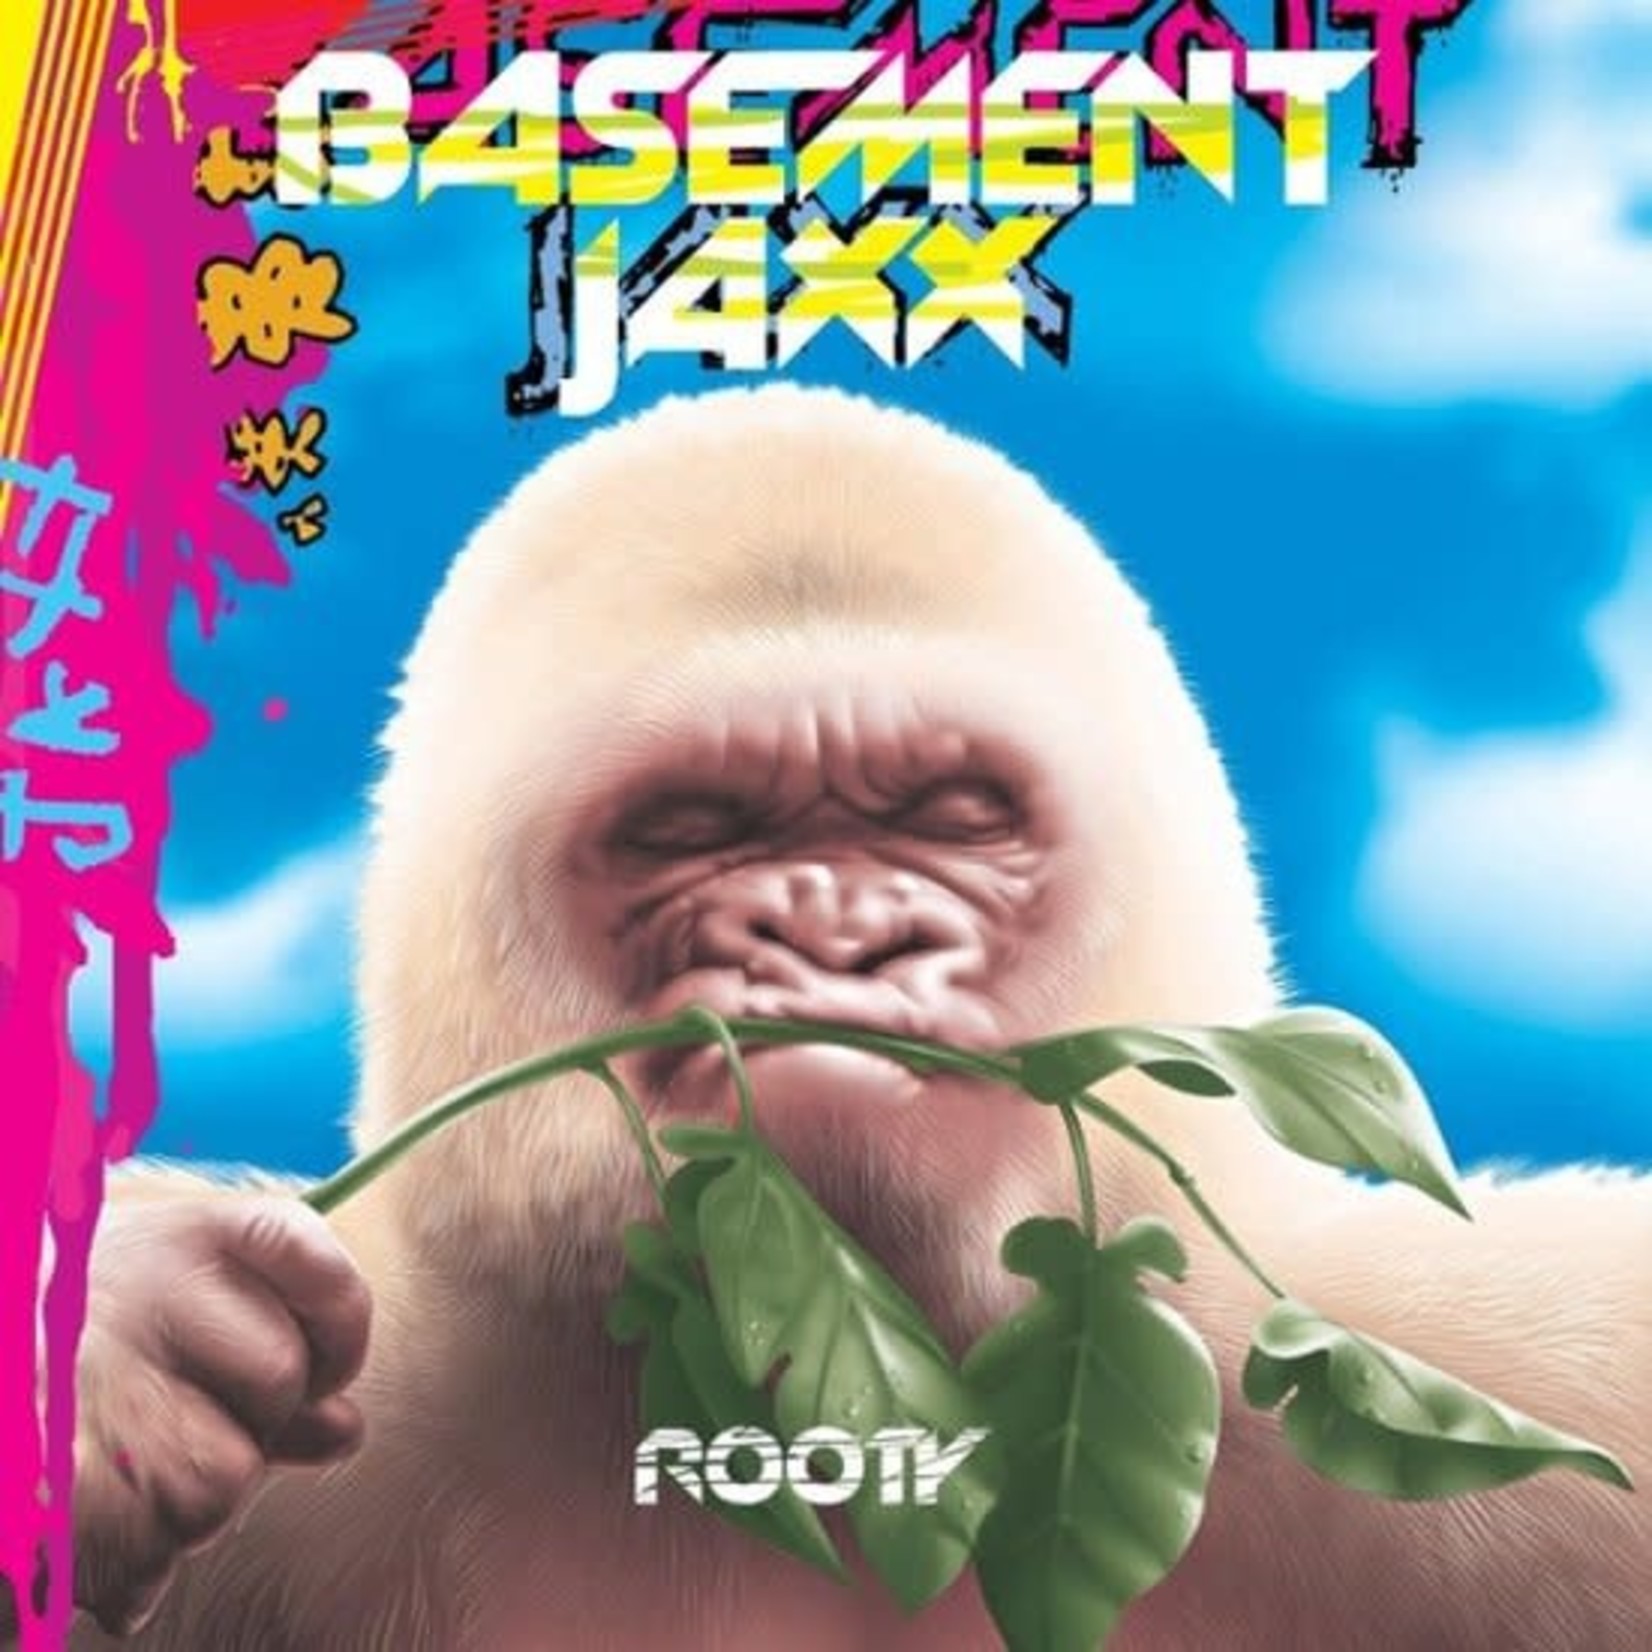 [New] Basement Jaxx - Rooty (2LP, pink vinyl, blue vinyl)